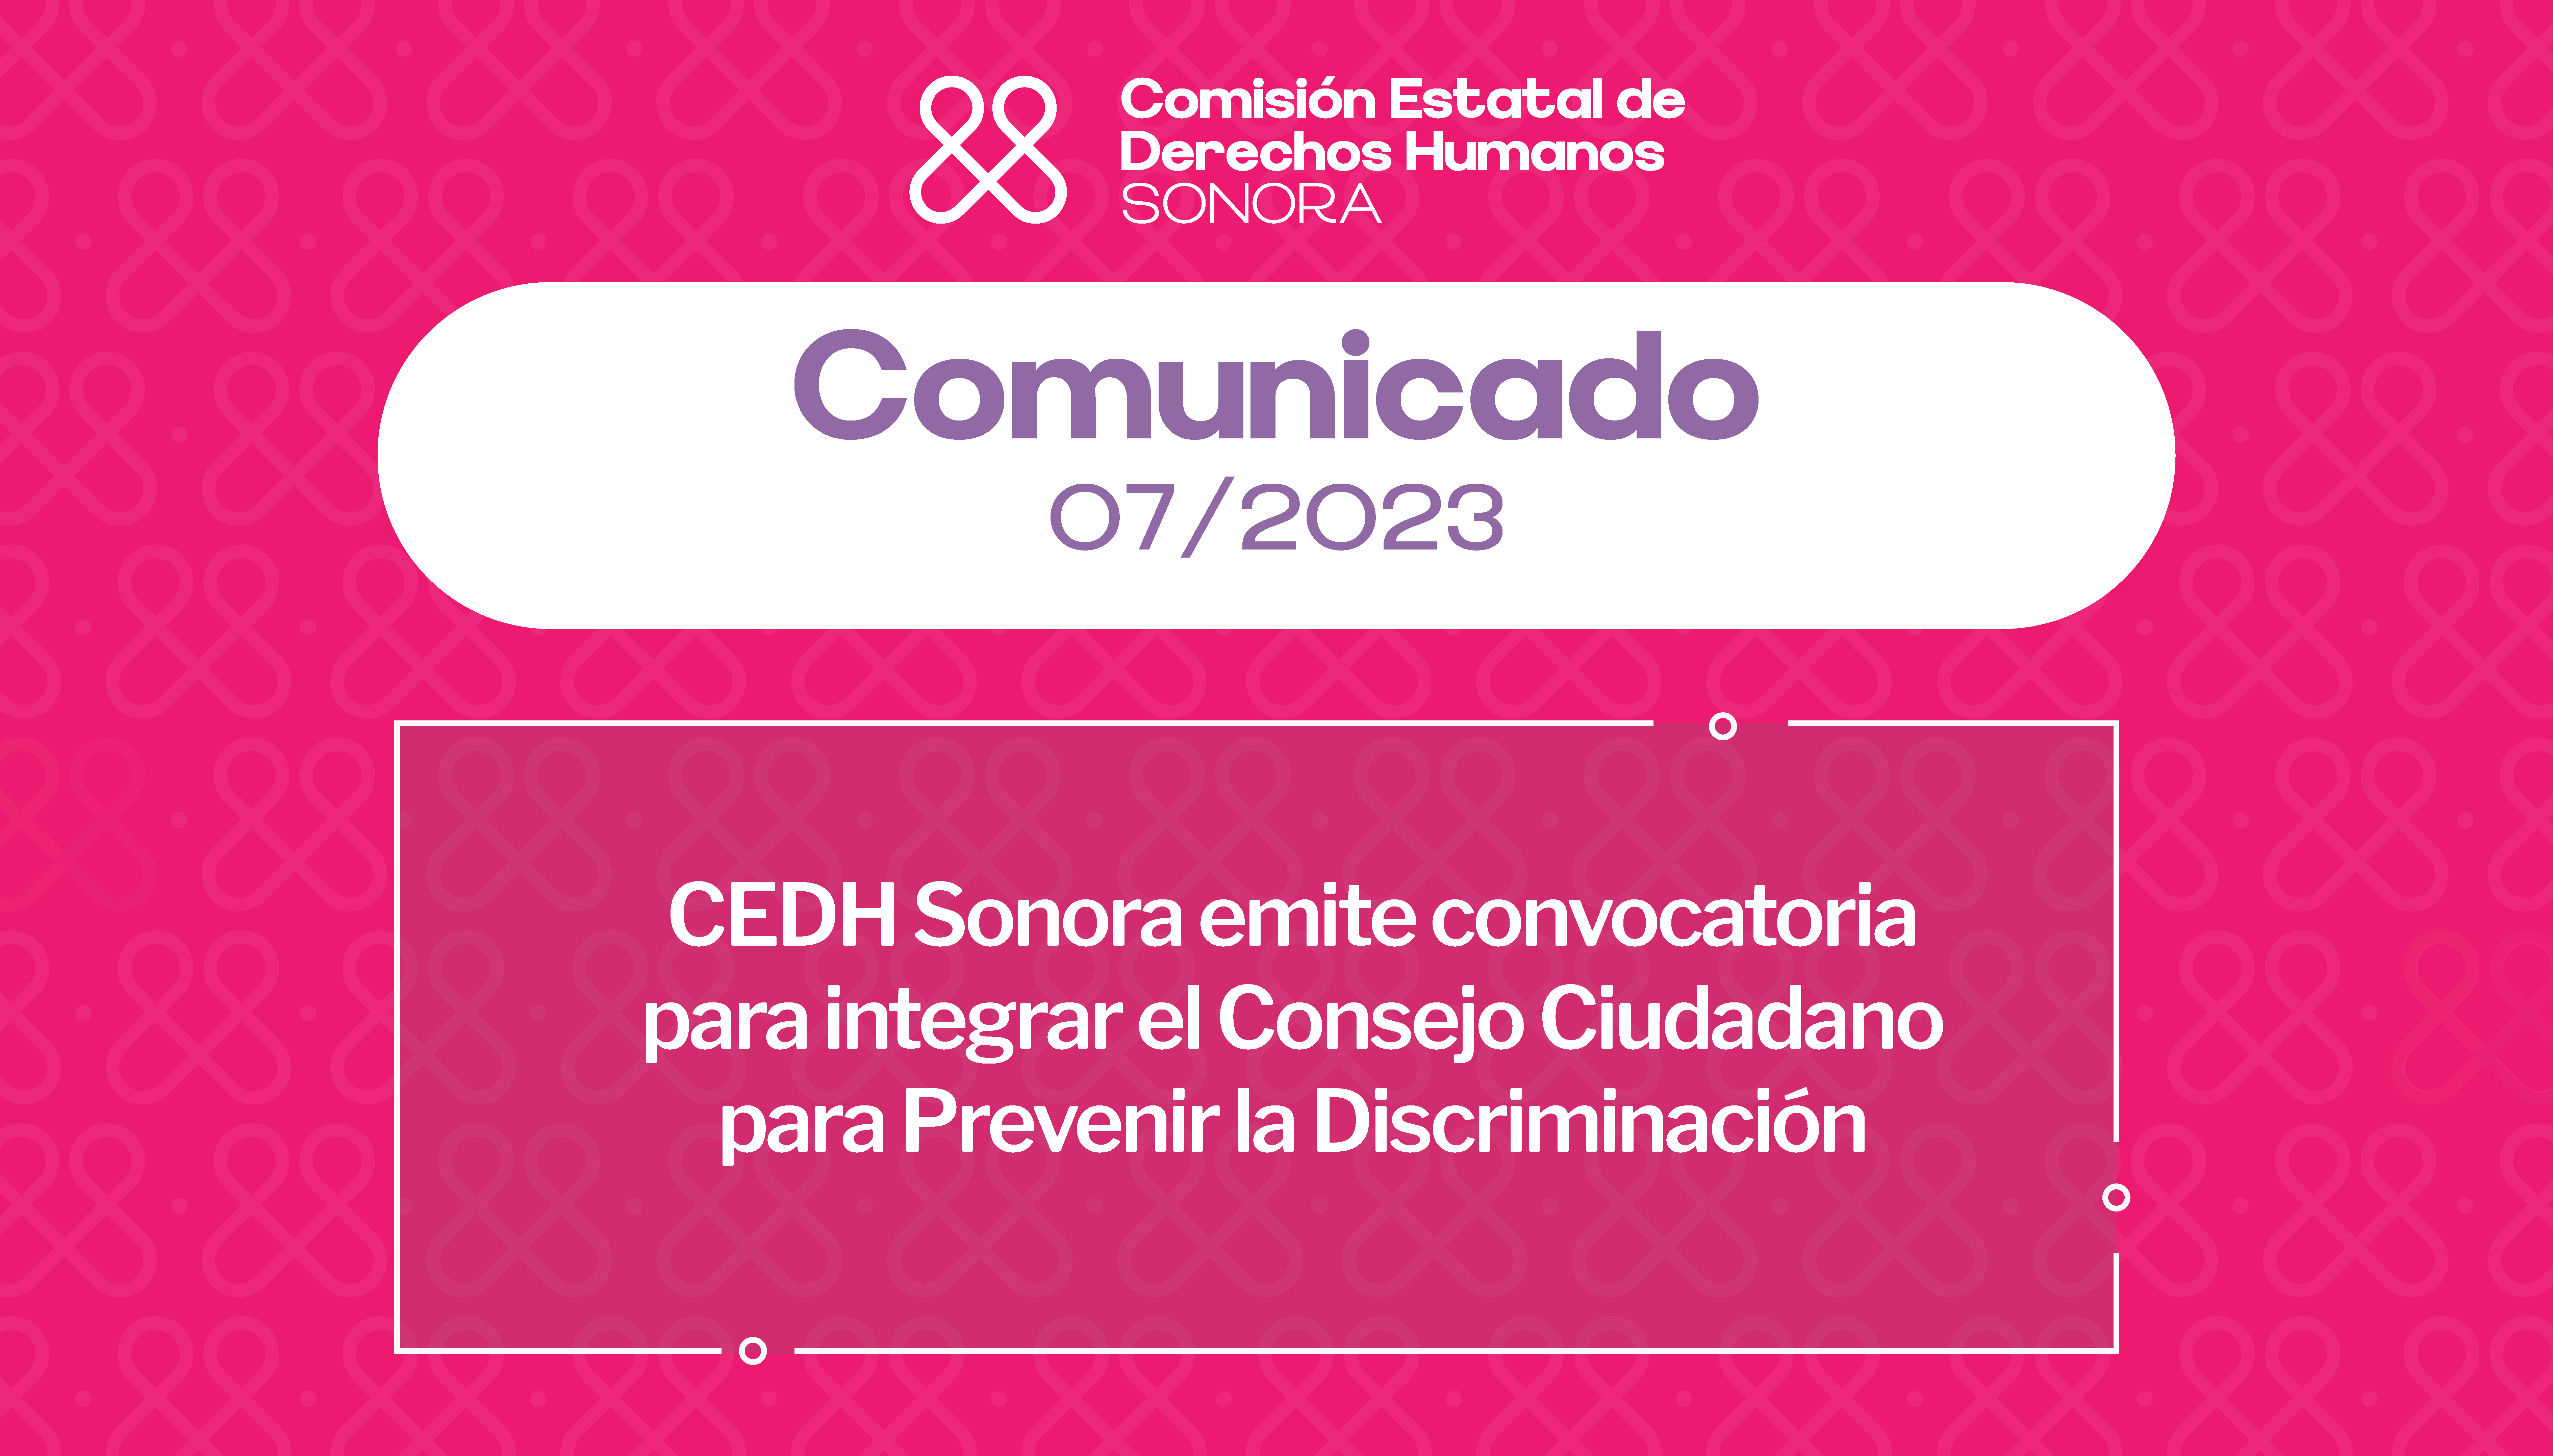 CEDH Sonora emite convocatoria para integrar el Consejo Ciudadano para Prevenir la Discriminación